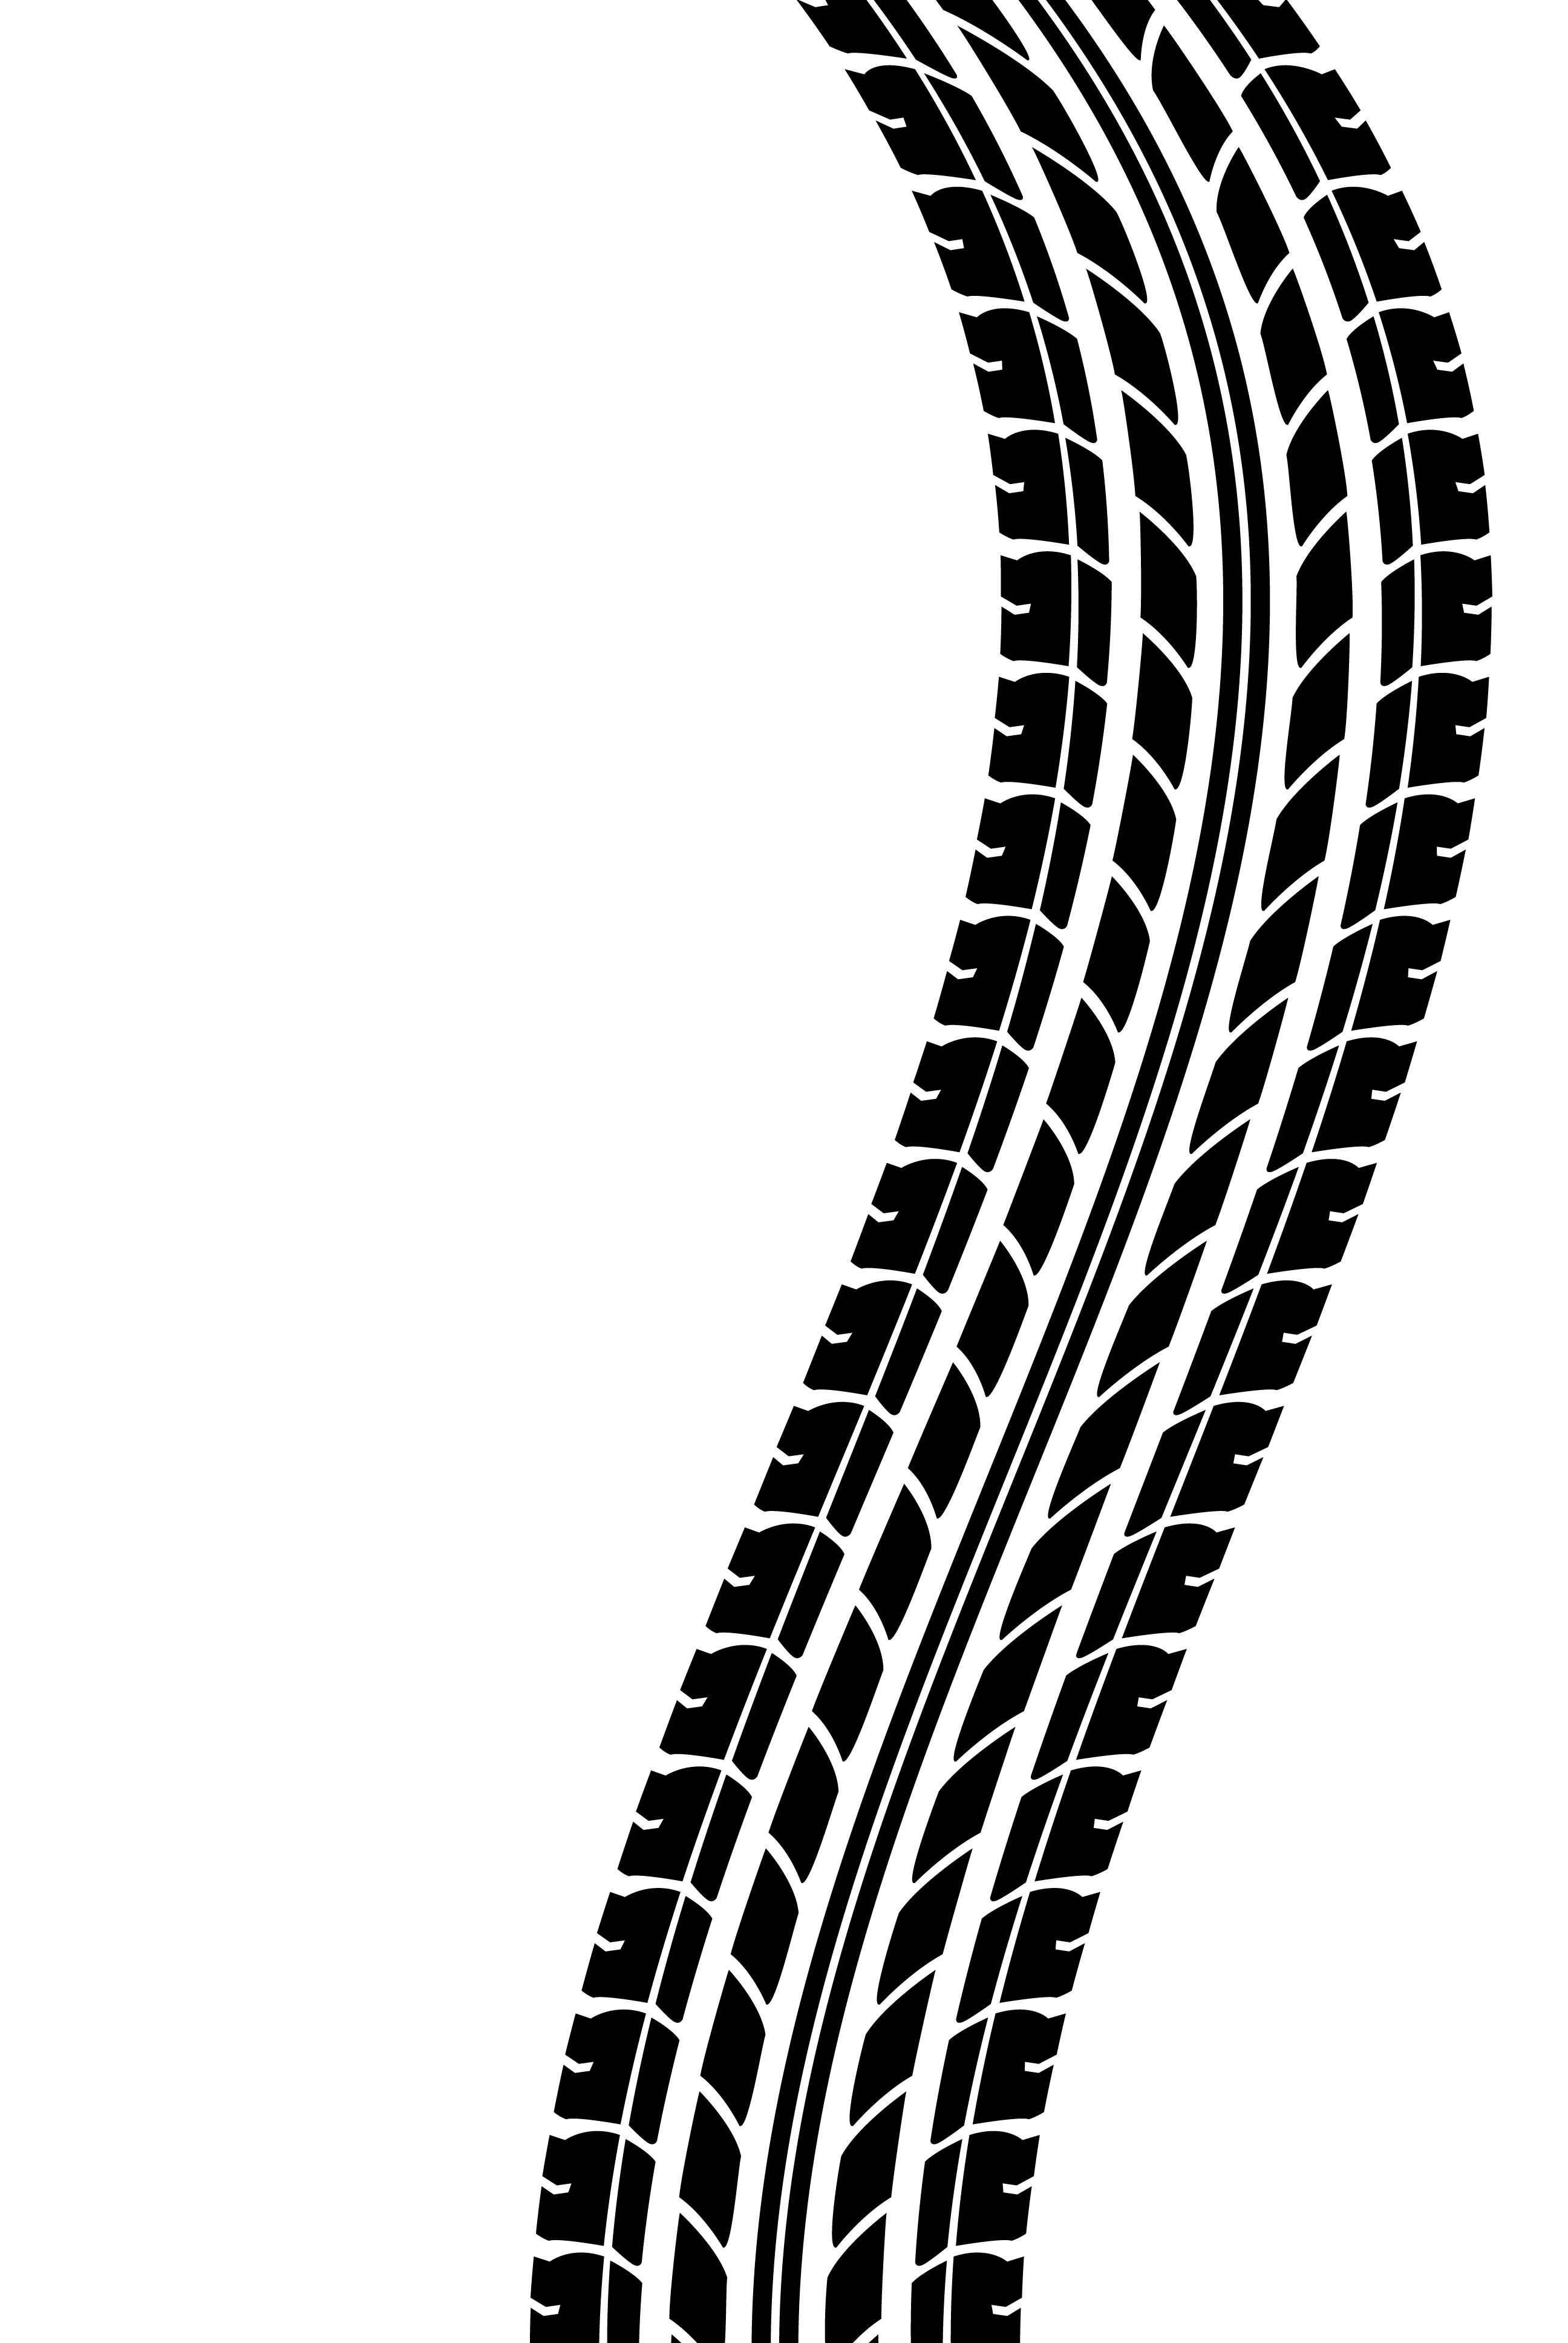 clip art illustration of tire